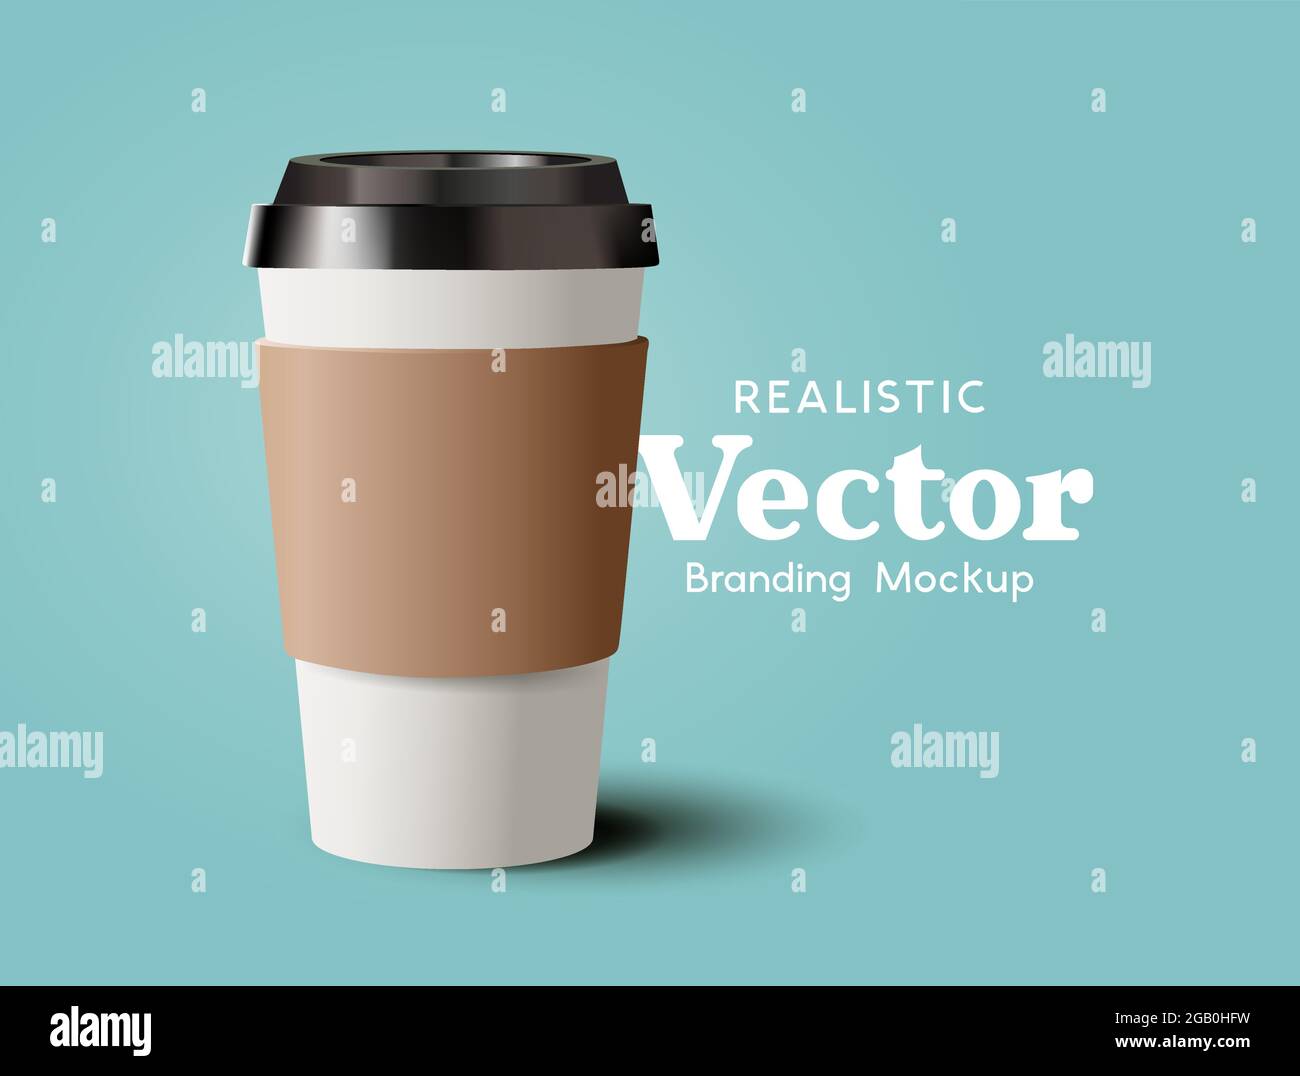 Eine realistische Pappkaffeetasse zum Mitnehmen. Moderne Getränke heiße Getränke Marketing-Vorlage Vektor-Illustration Stock Vektor